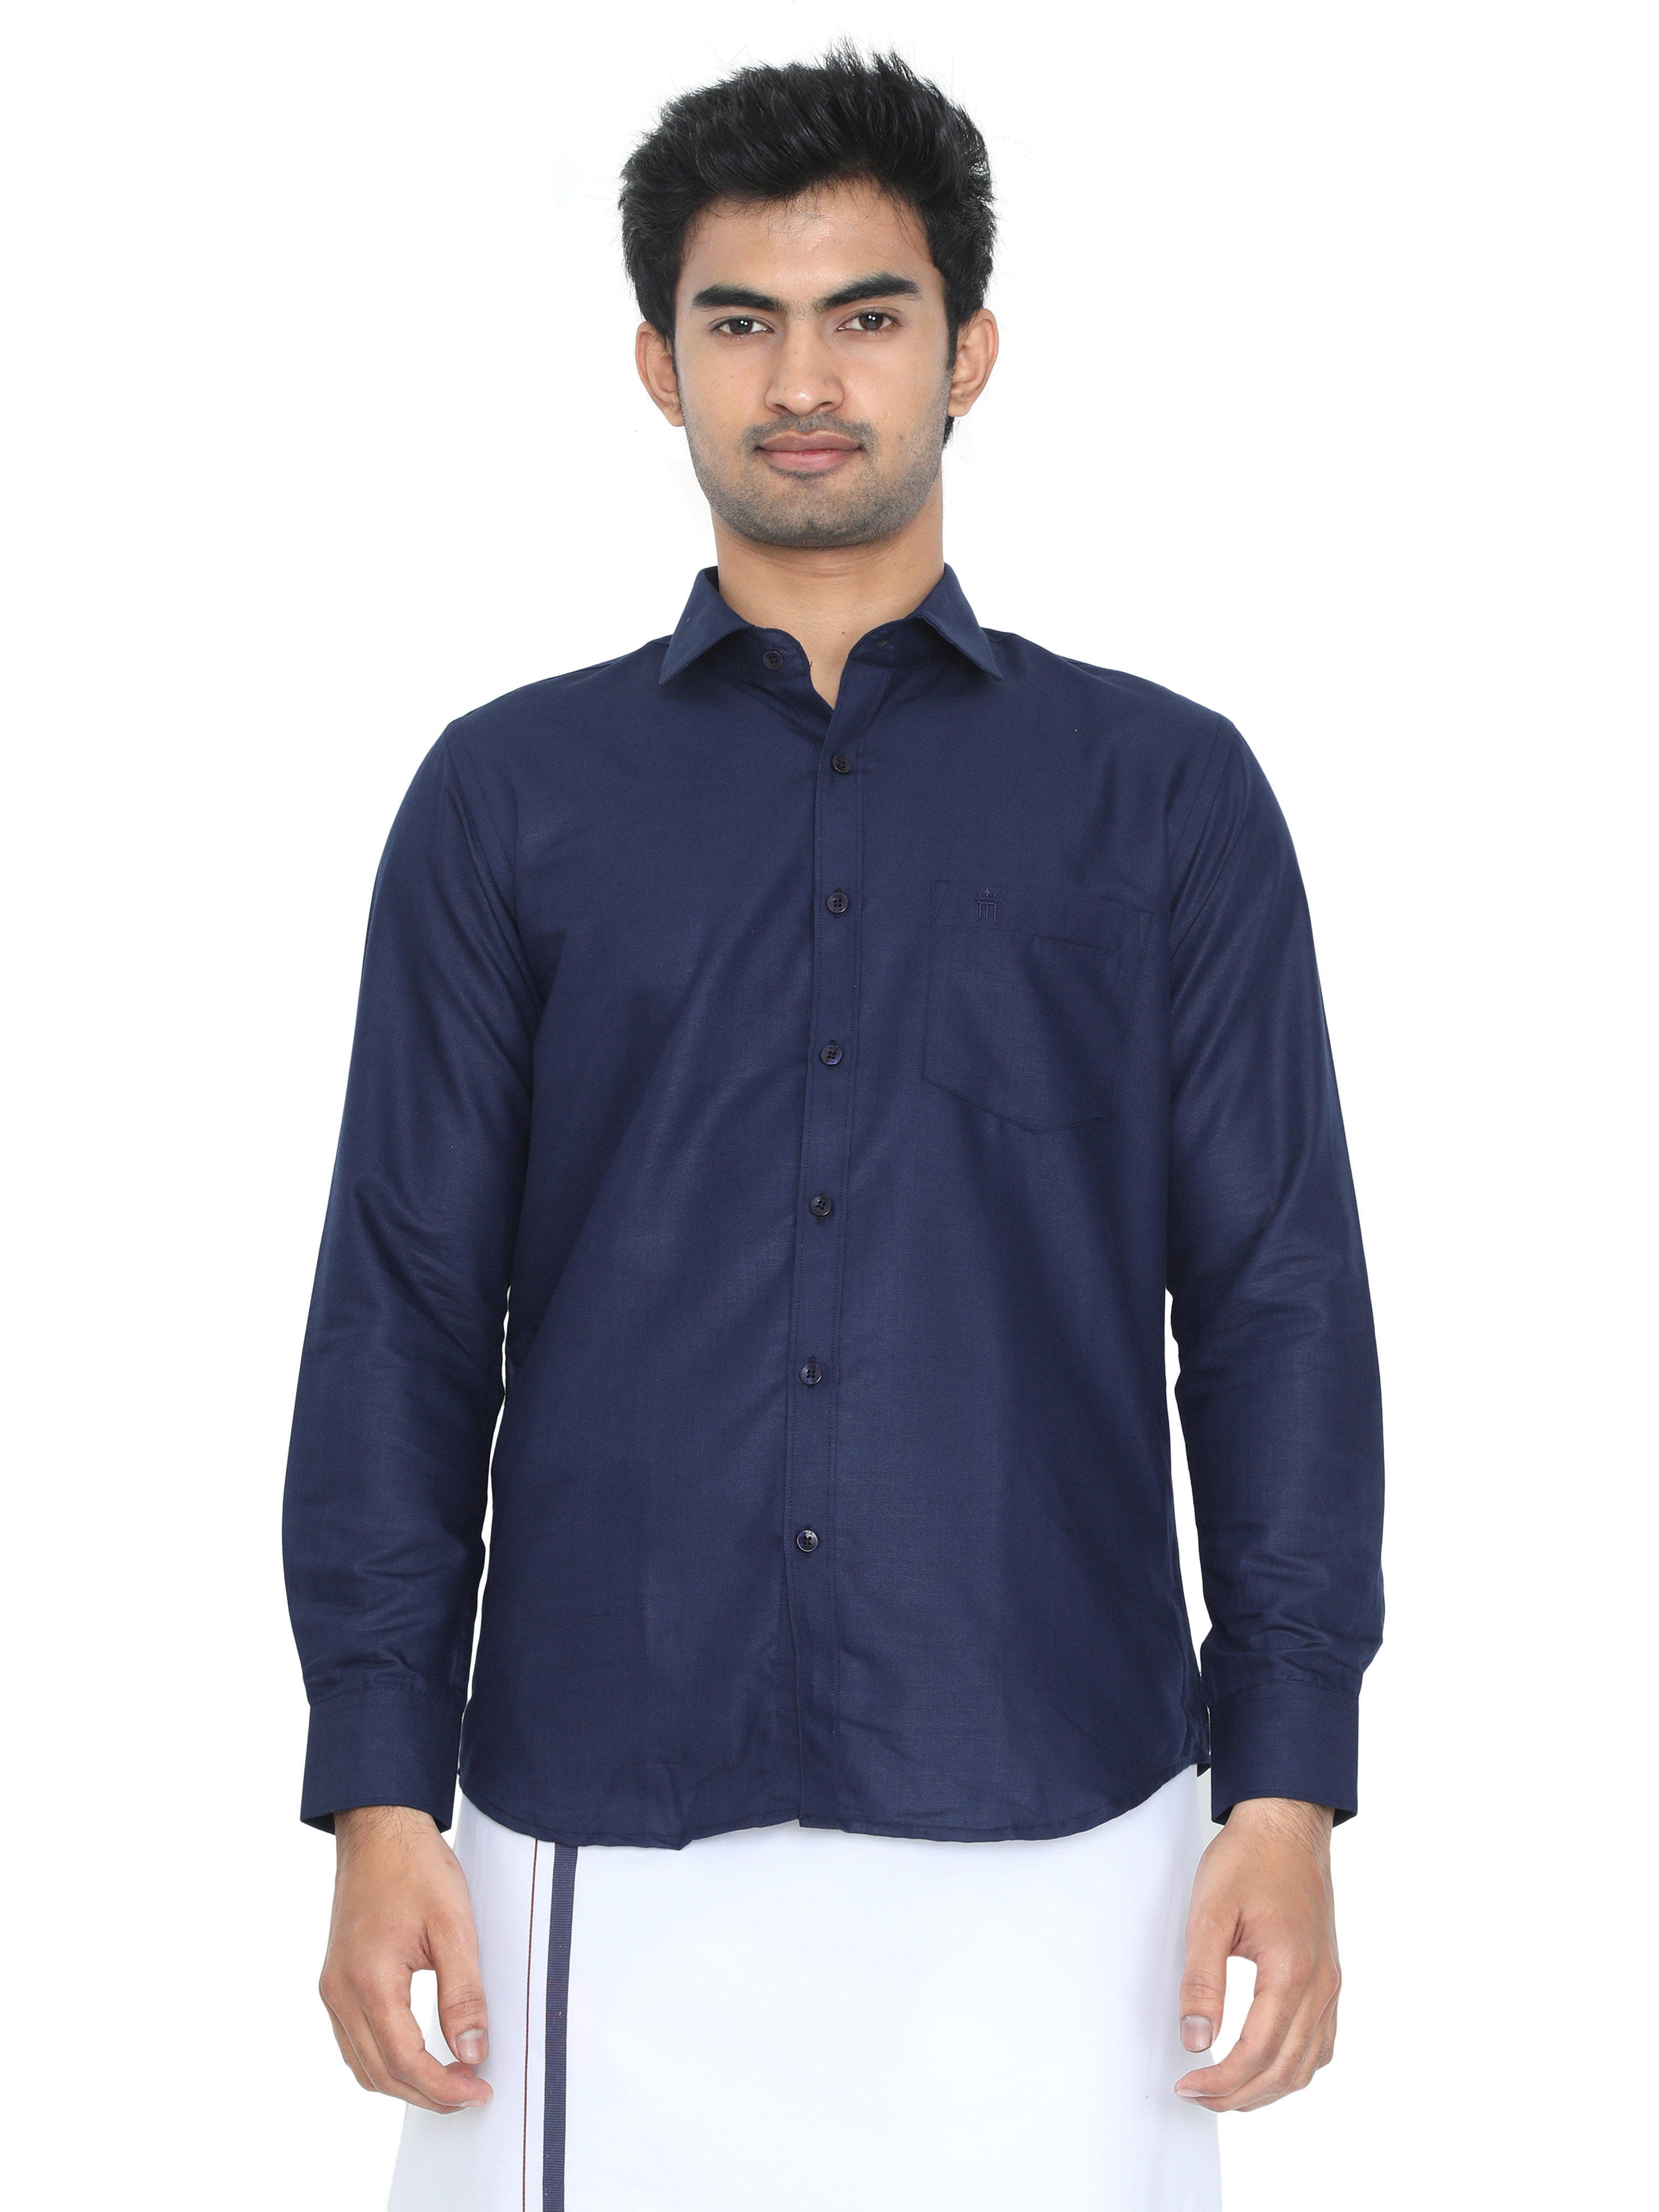 Buy Economic Formal Navy Blue Colour Shirt Full Sleeve